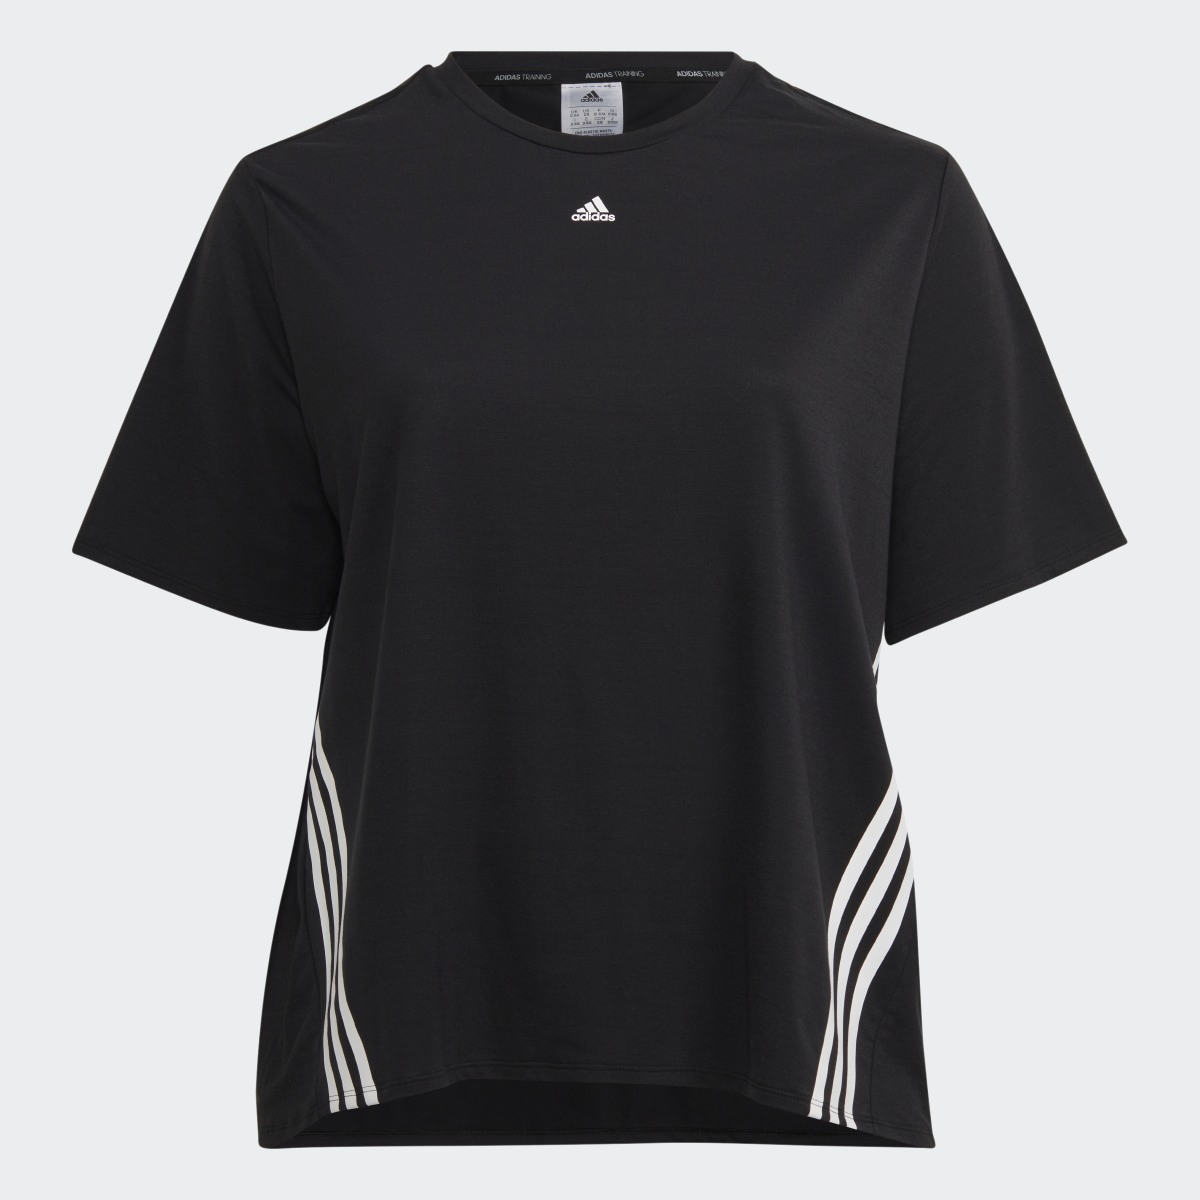 Adidas Train Icons 3-Stripes T-Shirt (Plus Size). 5